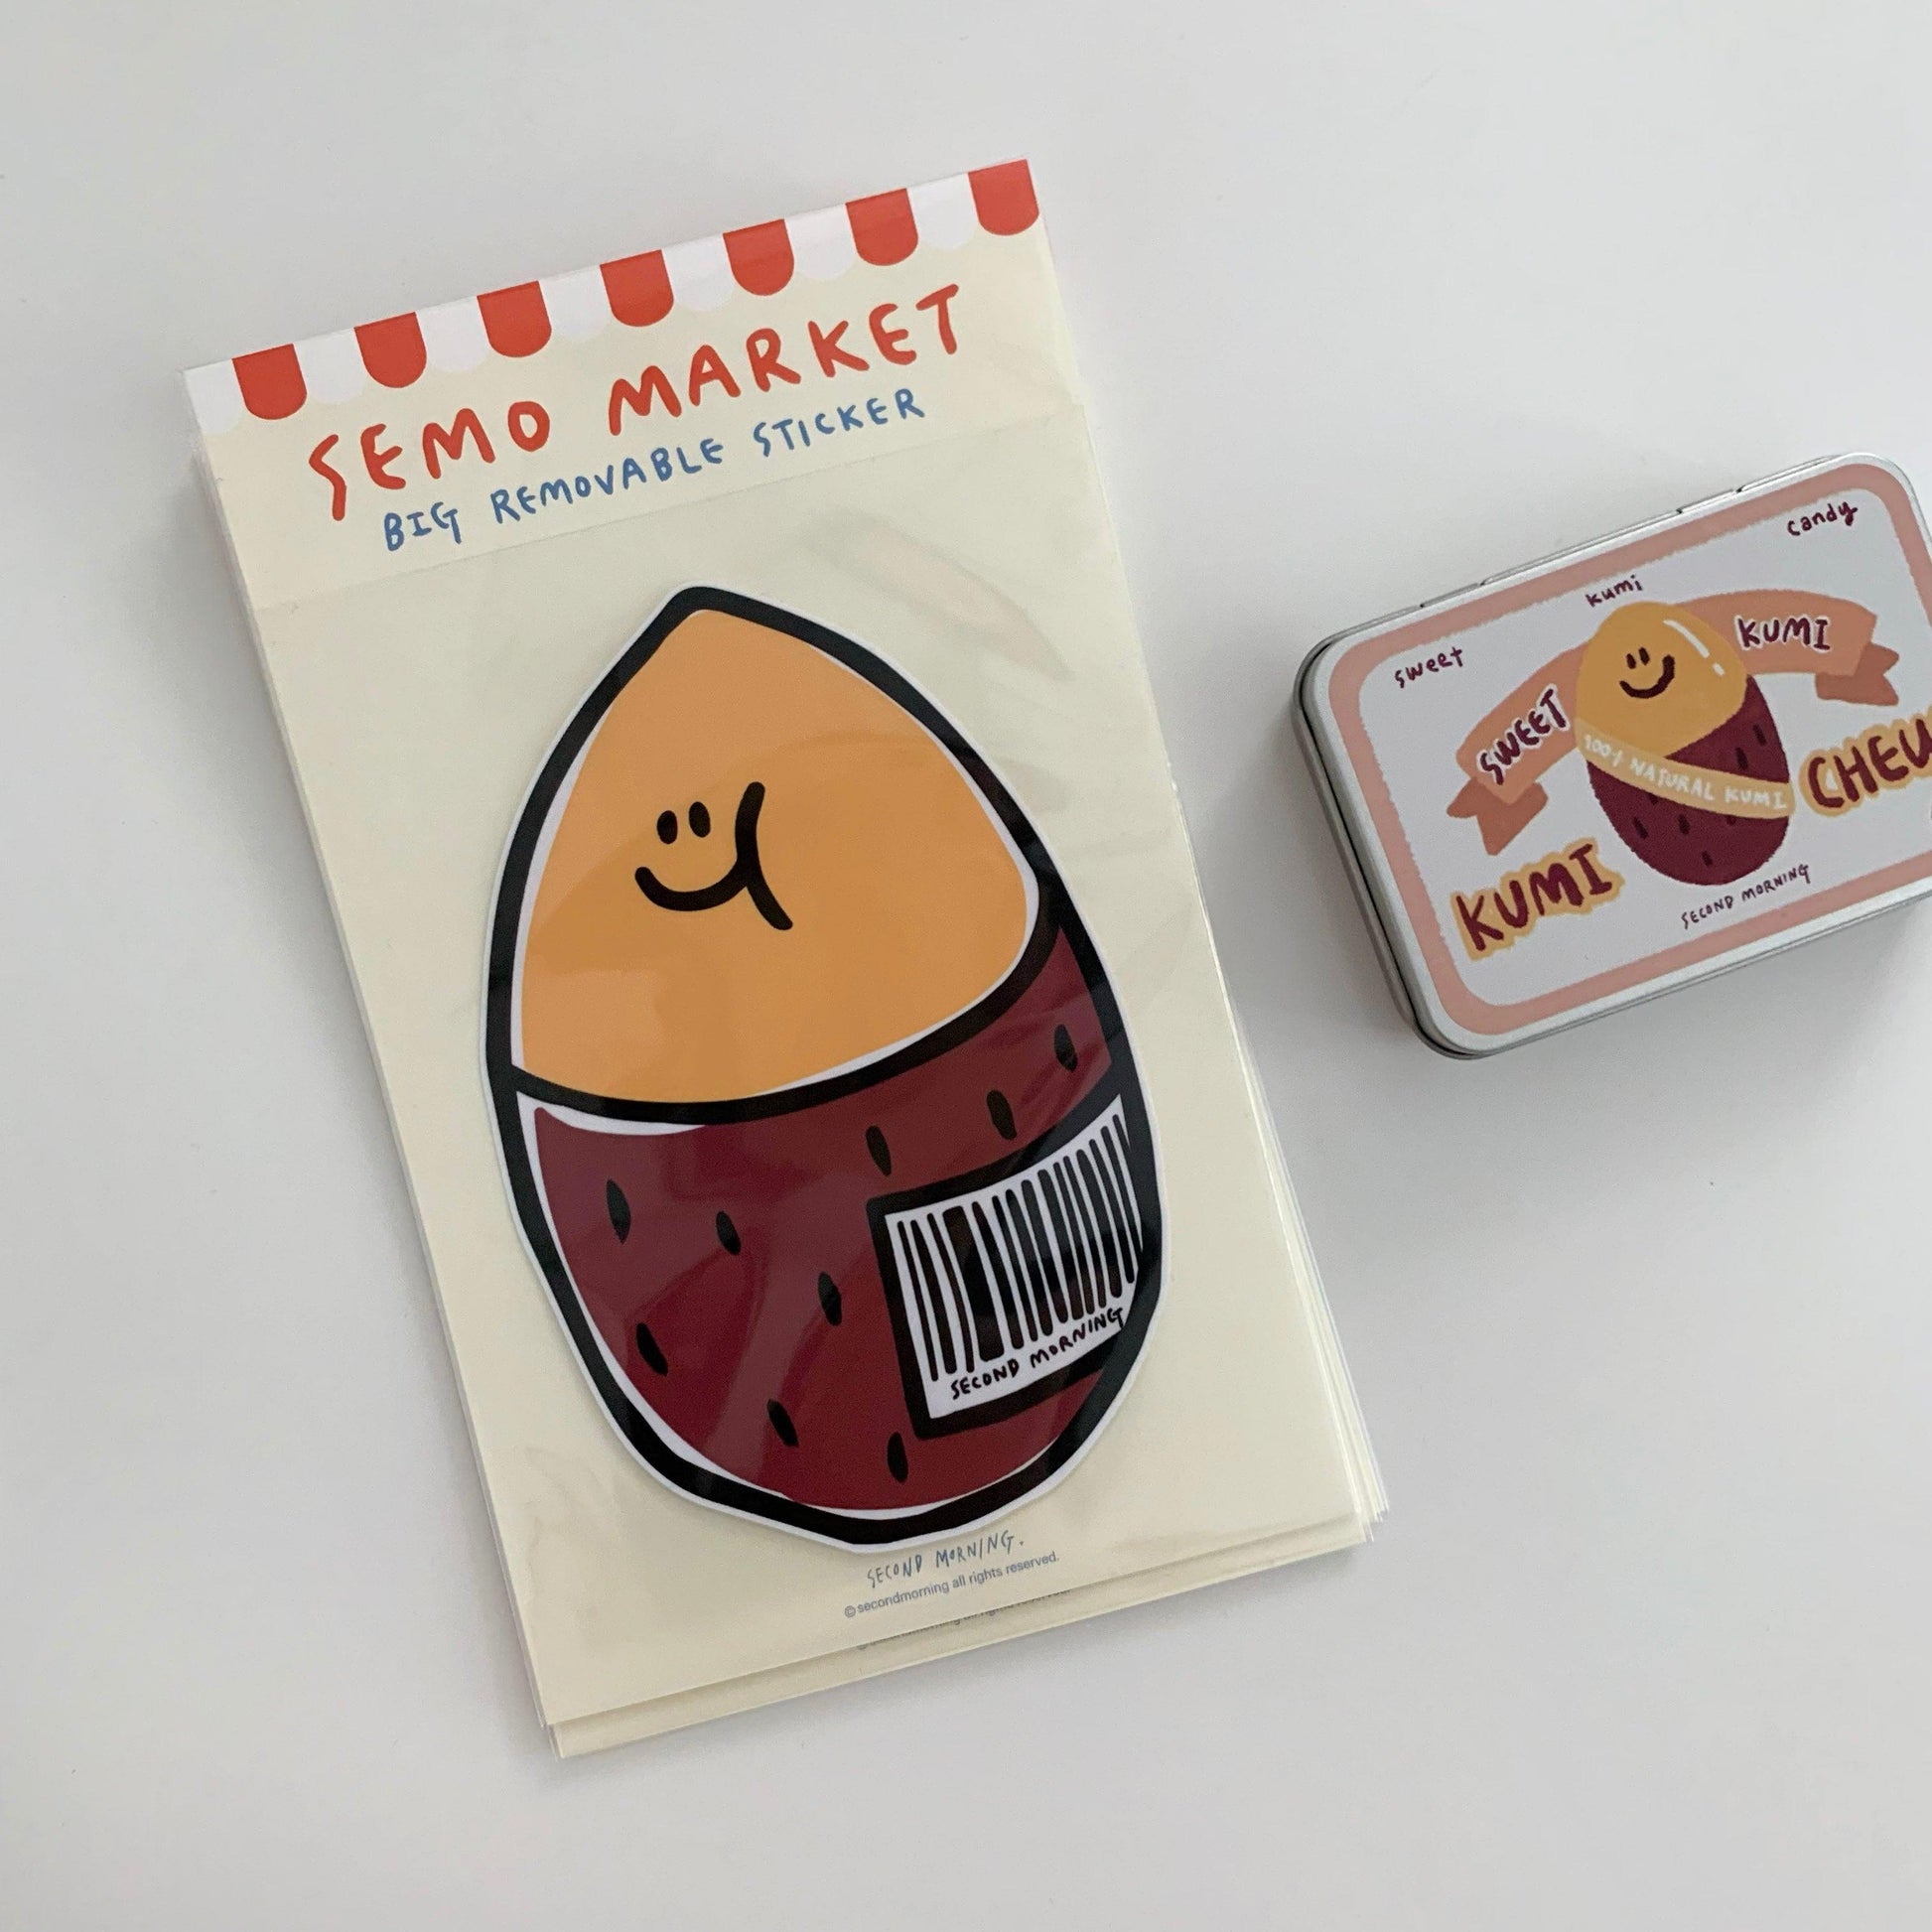 【現貨】Second Morning Semo Market Big Removable Sticker 大貼紙 - SOUL SIMPLE HK